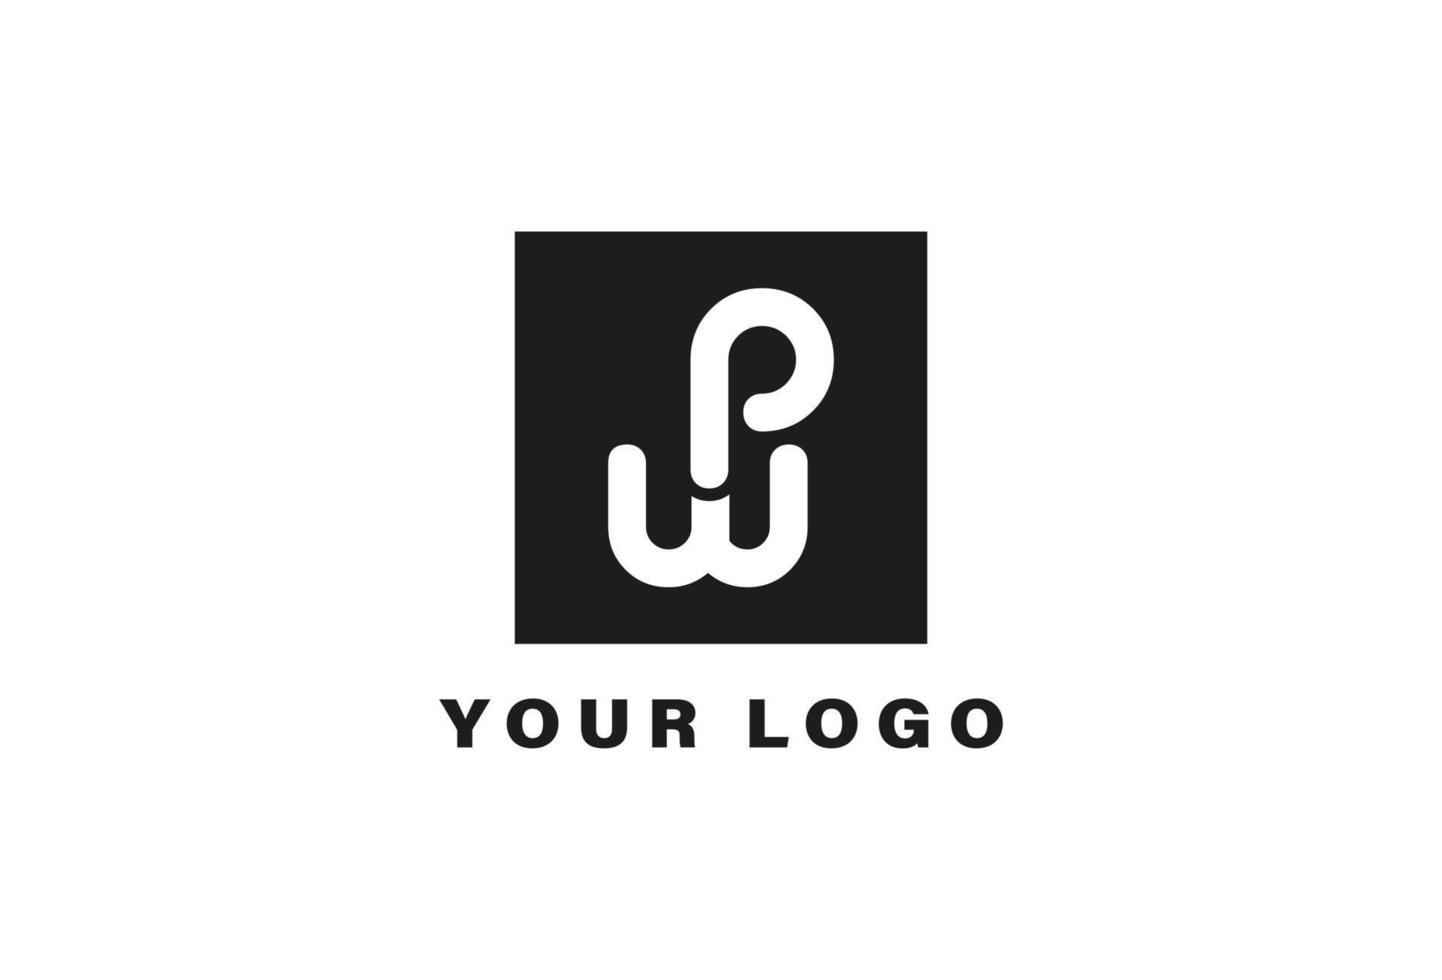 PW square logo design template vector